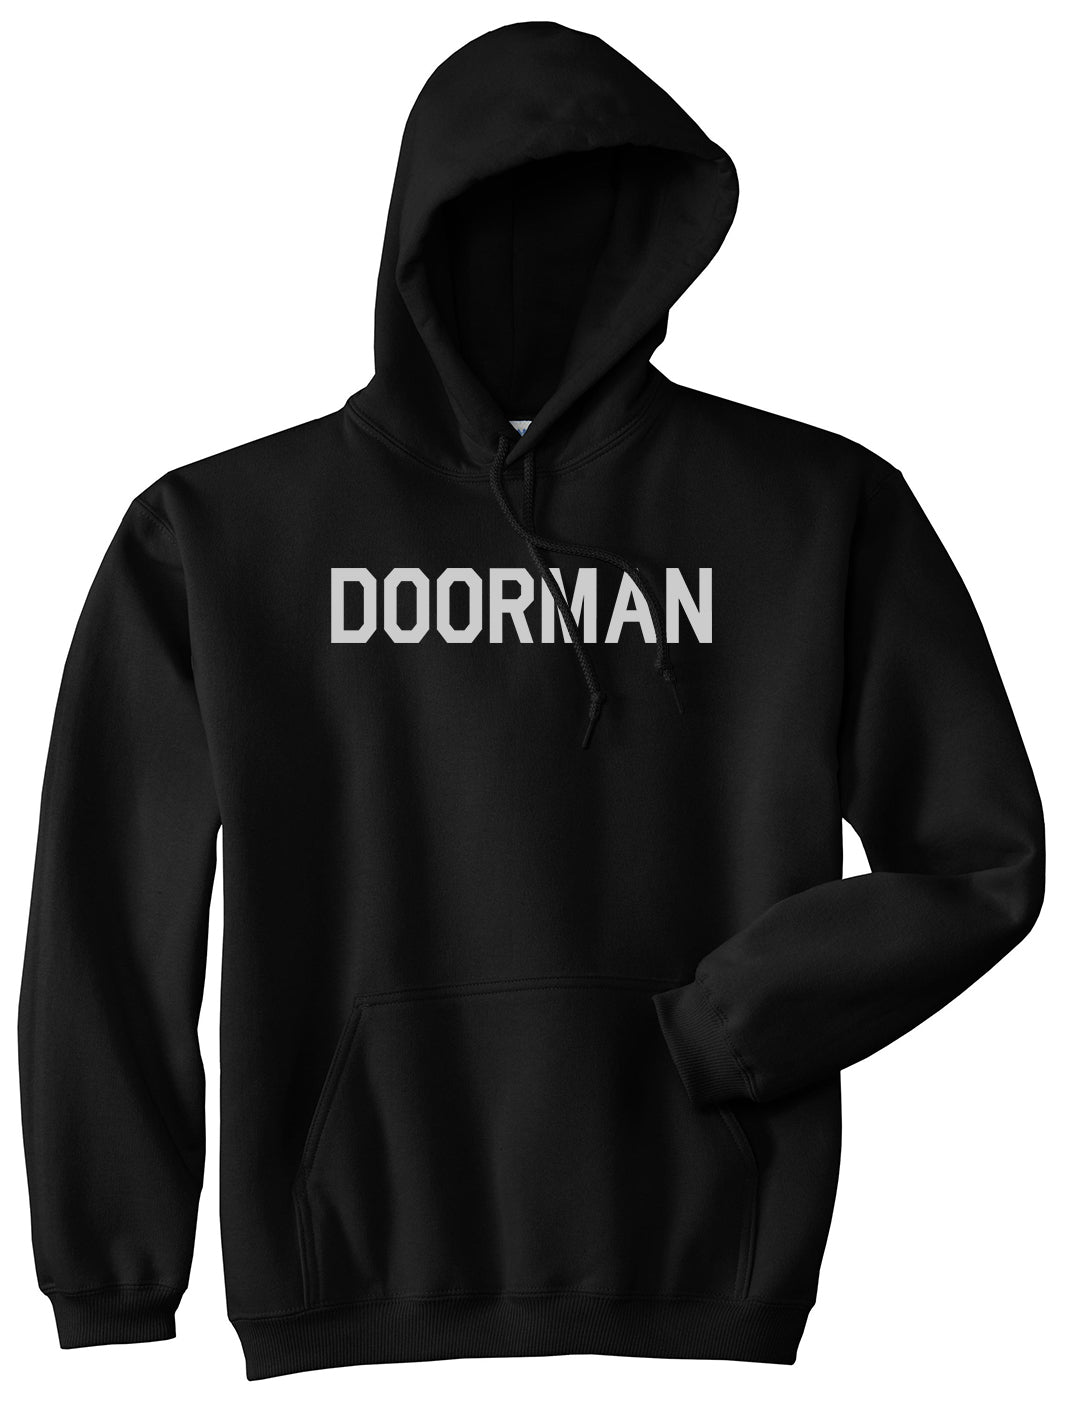 Doorman Mens Black Pullover Hoodie by Kings Of NY